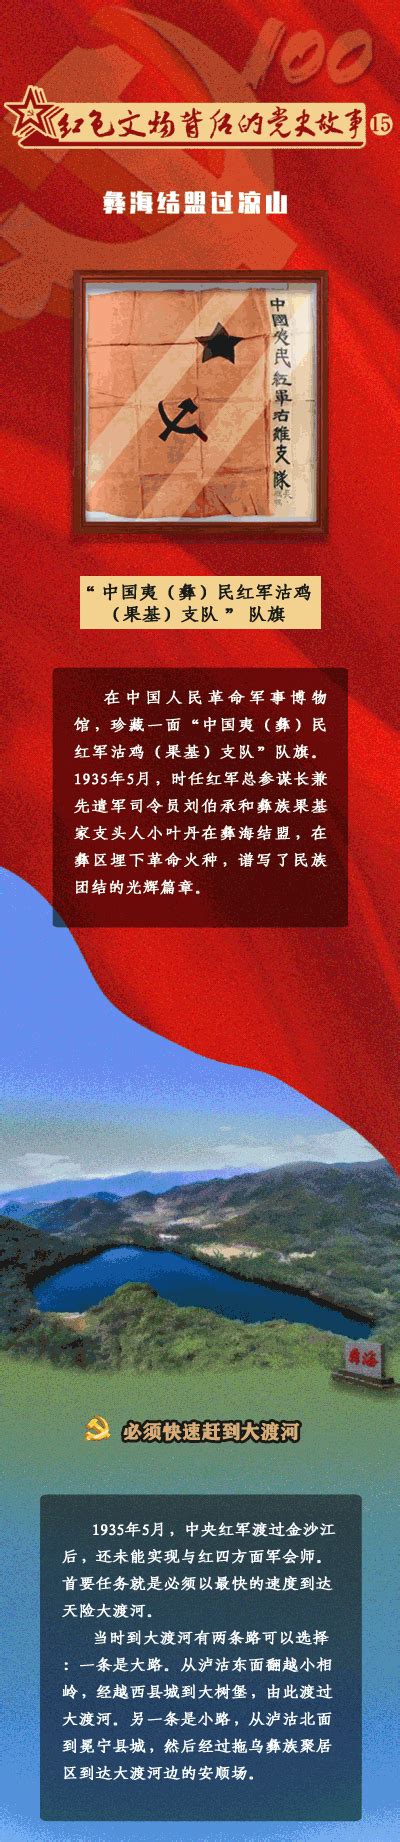 红色文物背后的党史故事⑮彝海结盟过凉山 杭州廉政网